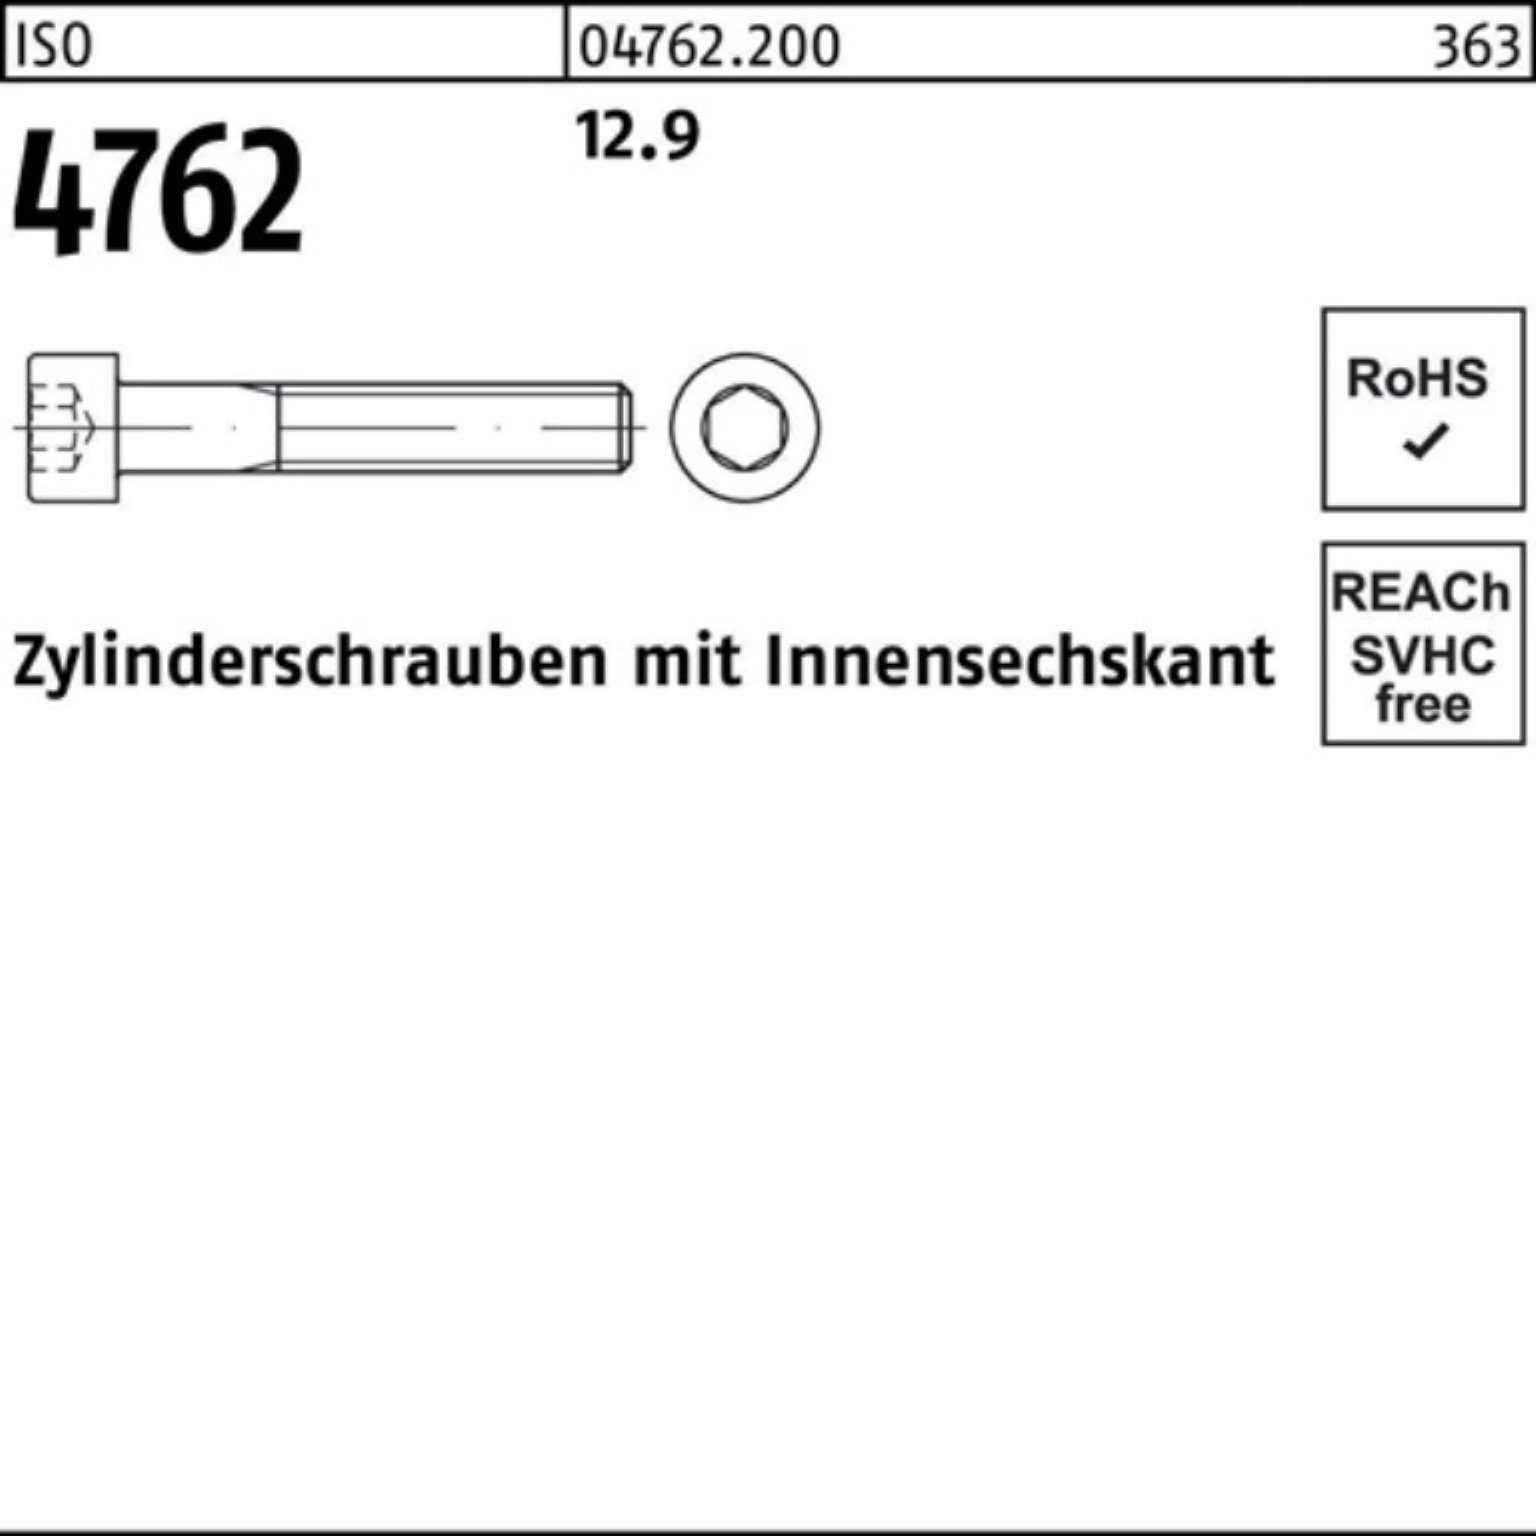 Pack Innen-6kt 12.9 500 Zylinderschraube M4x 20 Stück Zylinderschraube 4762 ISO 500er Reyher